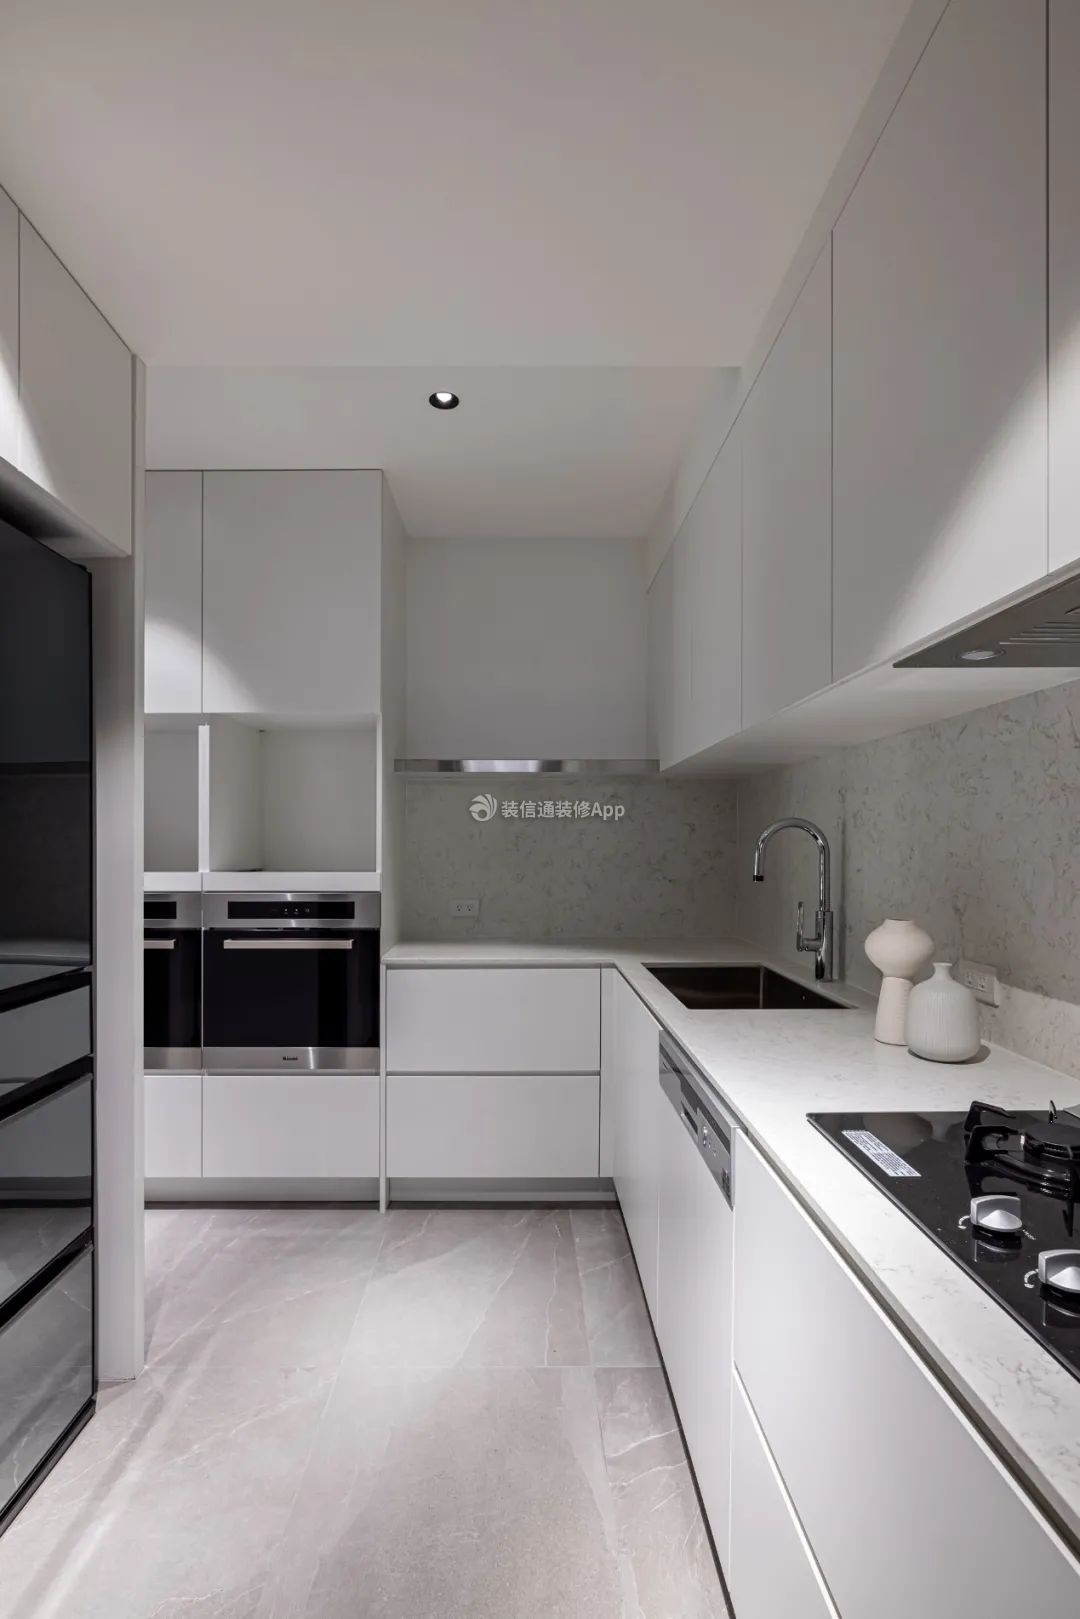 三室一厅一厨一卫厨房现代简约装修设计图